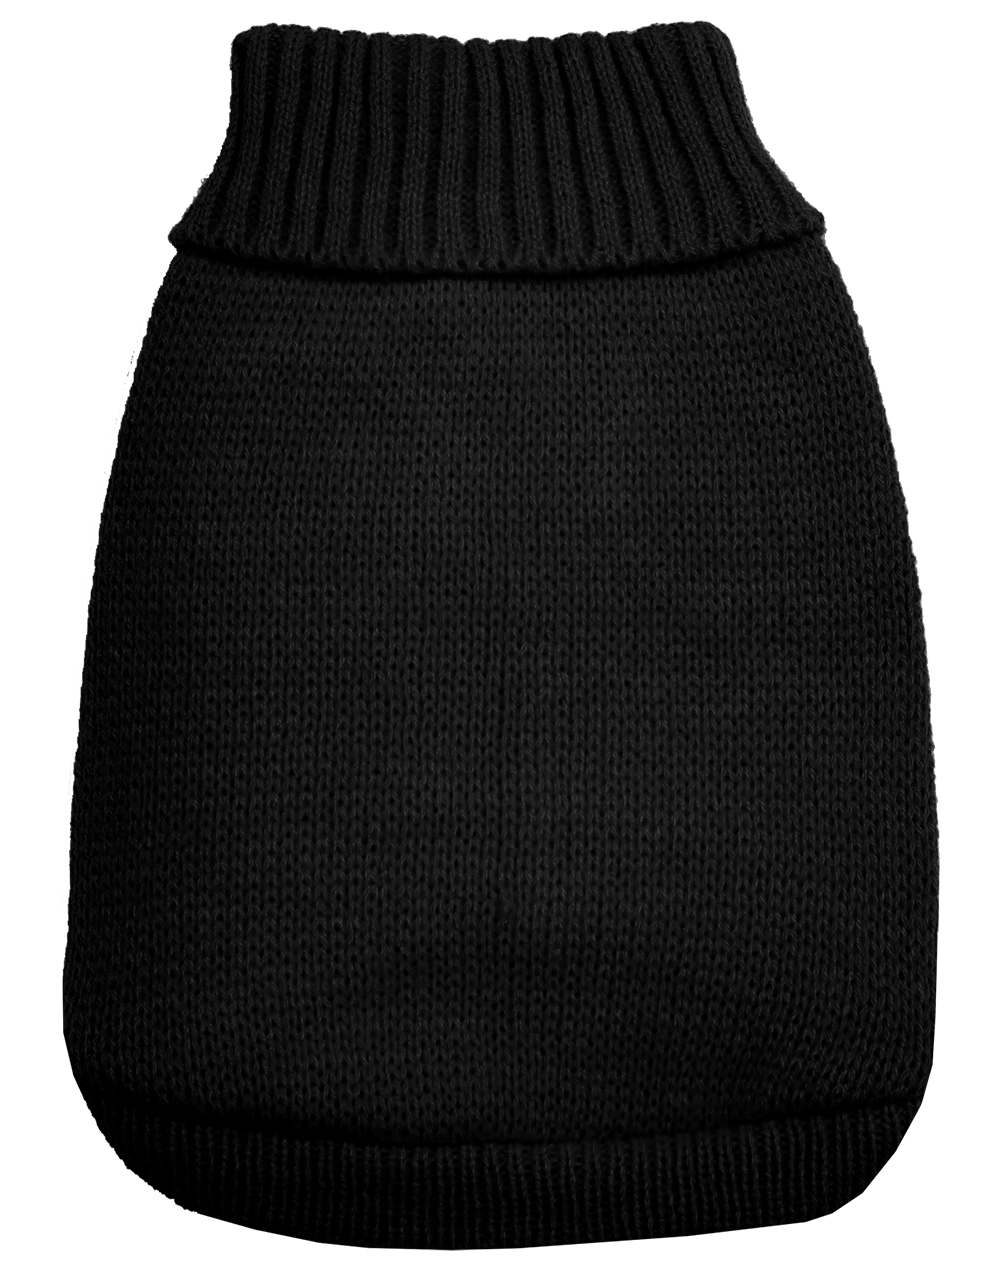 Knit Pet Sweater Black Size Small